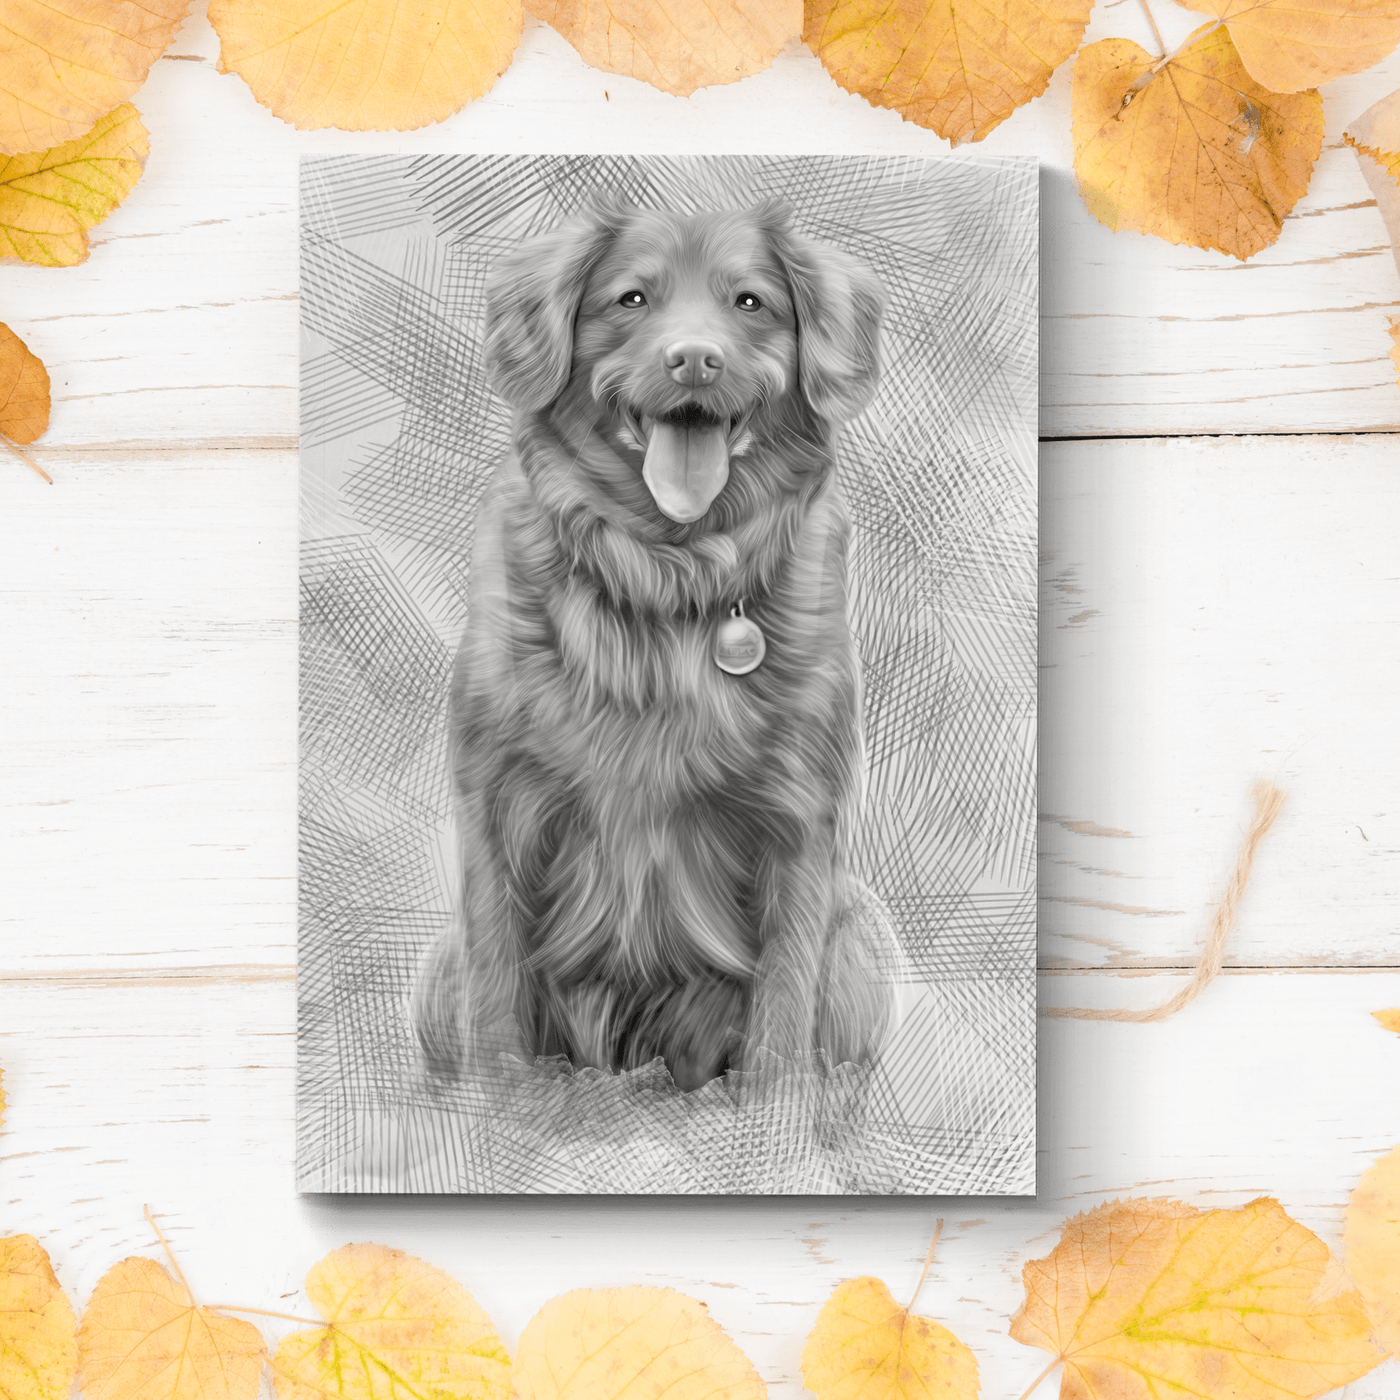 pencil pet portrait of an adorable fur dog